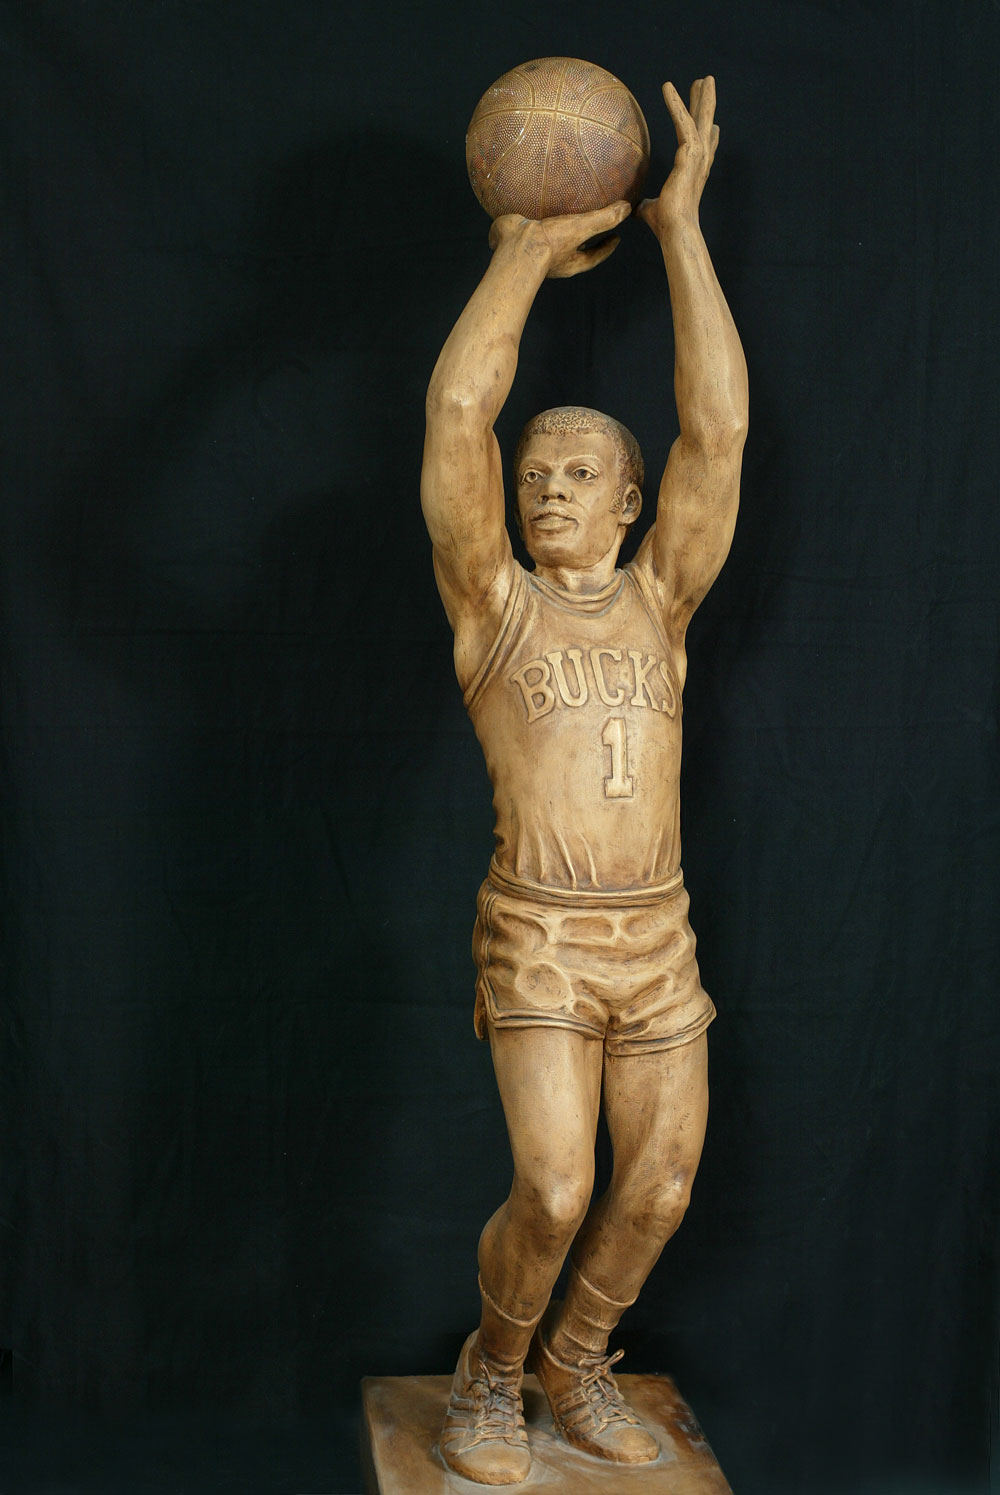 Sculpture of Oscar Robertson shooting a basketball.